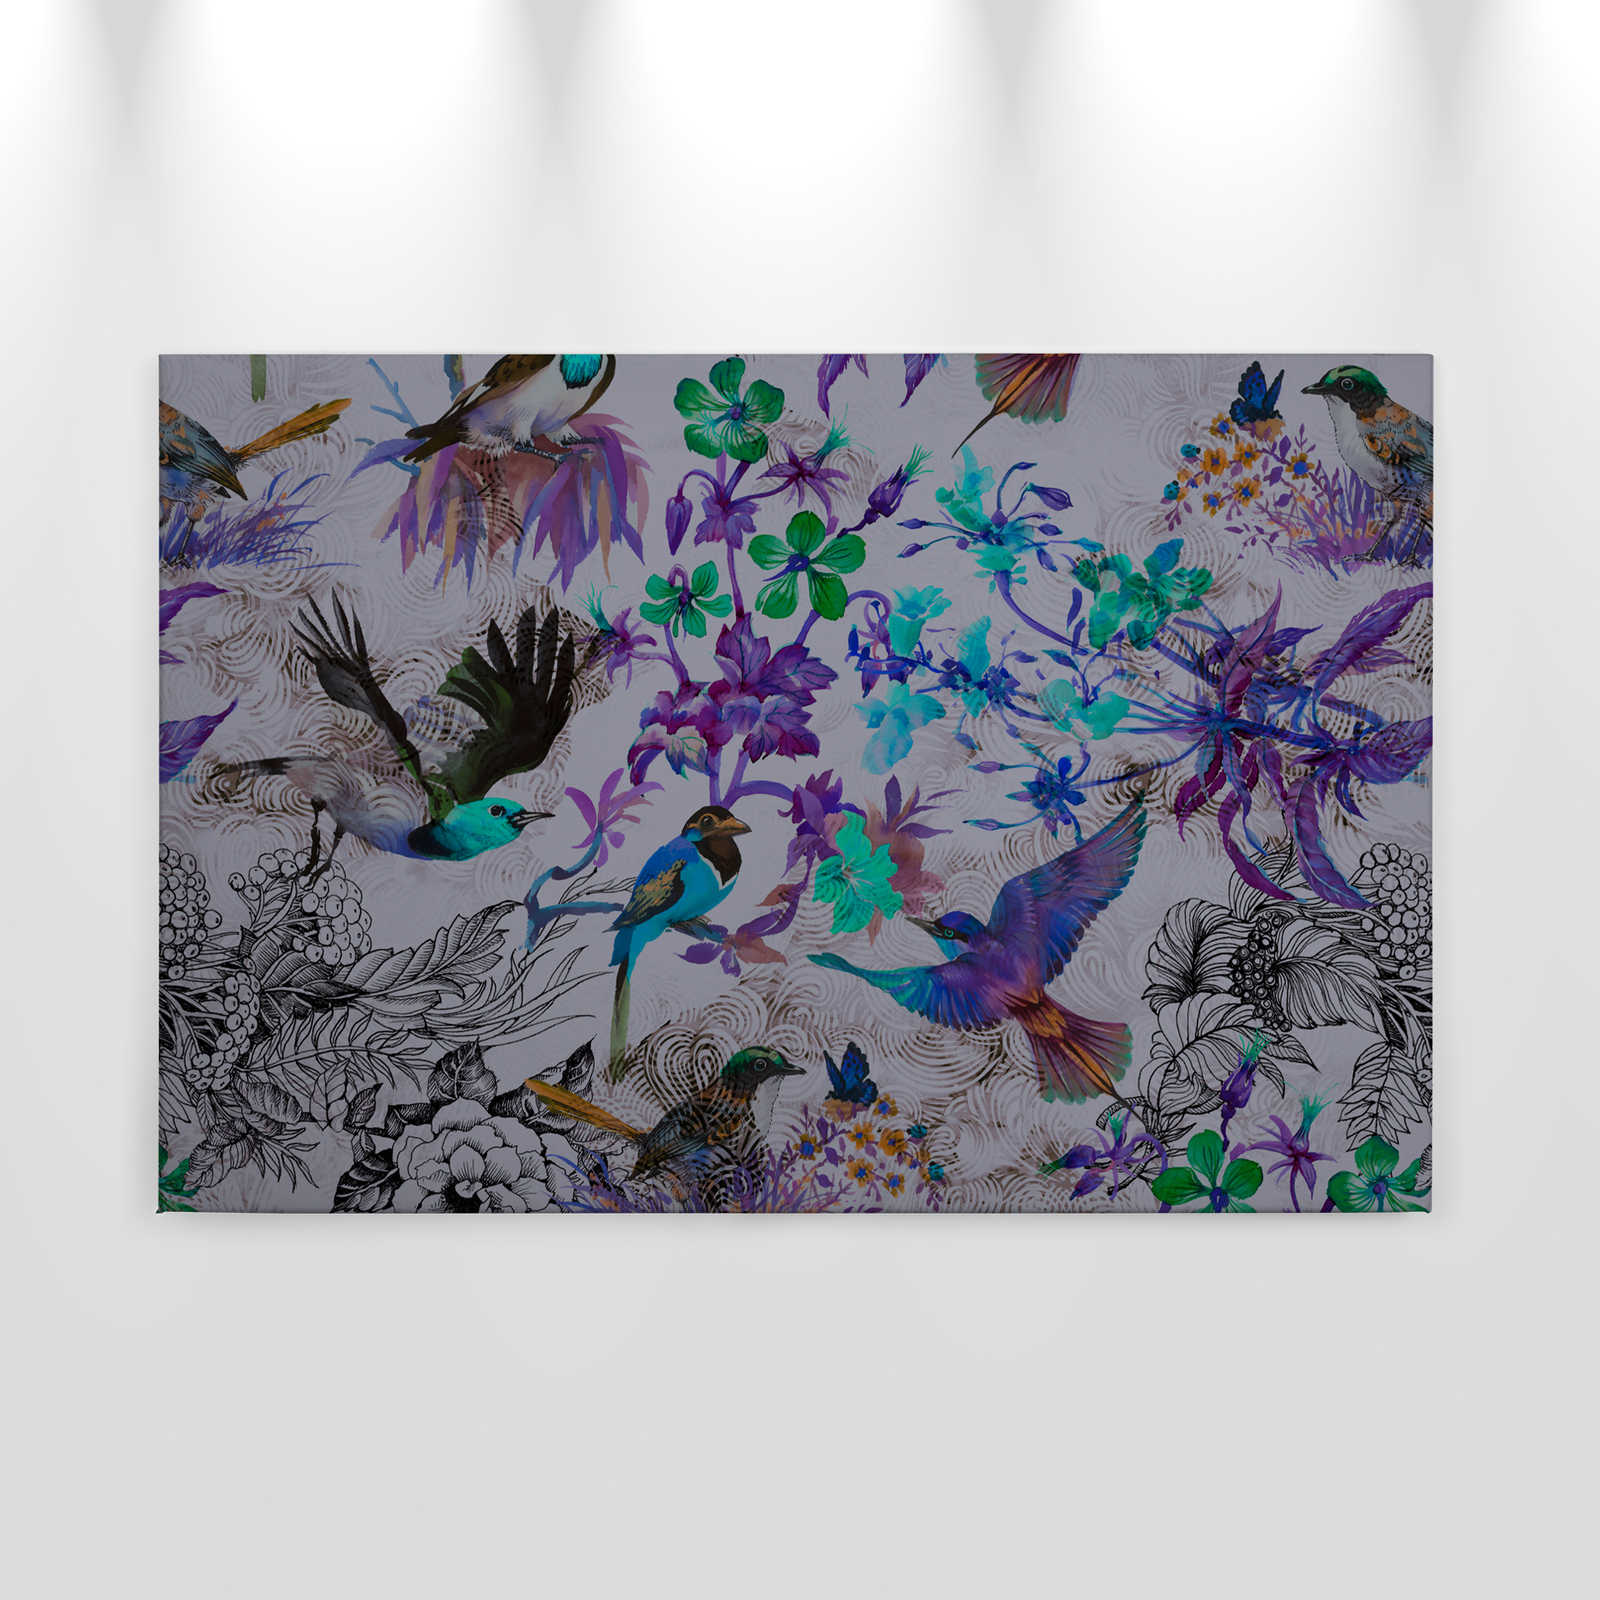             Paars canvas schilderij met bloemen en vogels - 0,90 m x 0,60 m
        